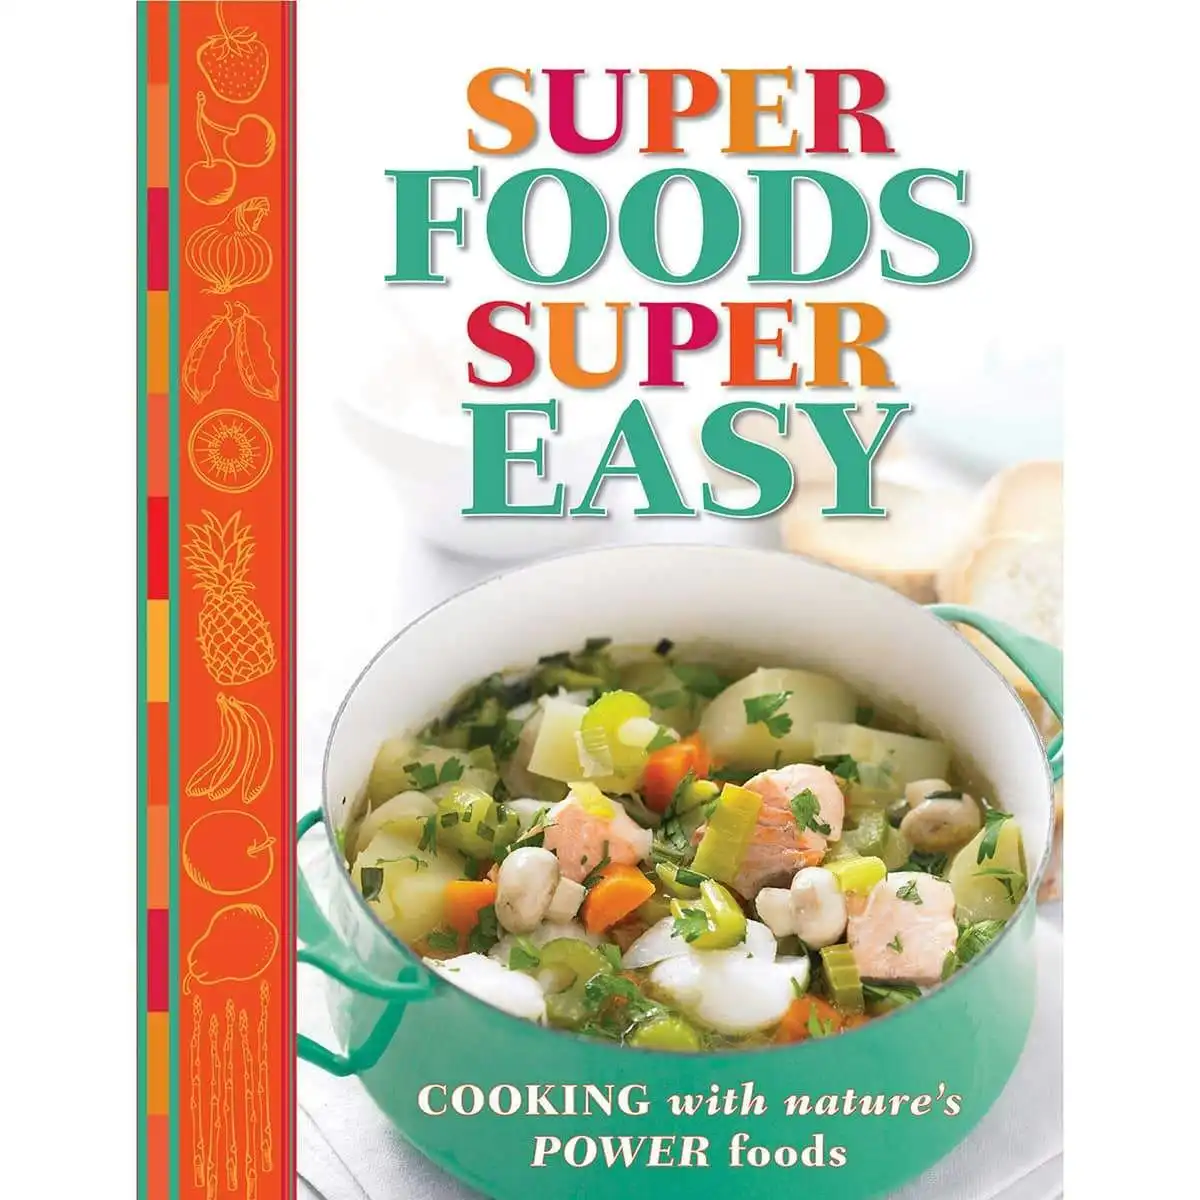 Promotional Super Foods, Super East, By Reader's Digest